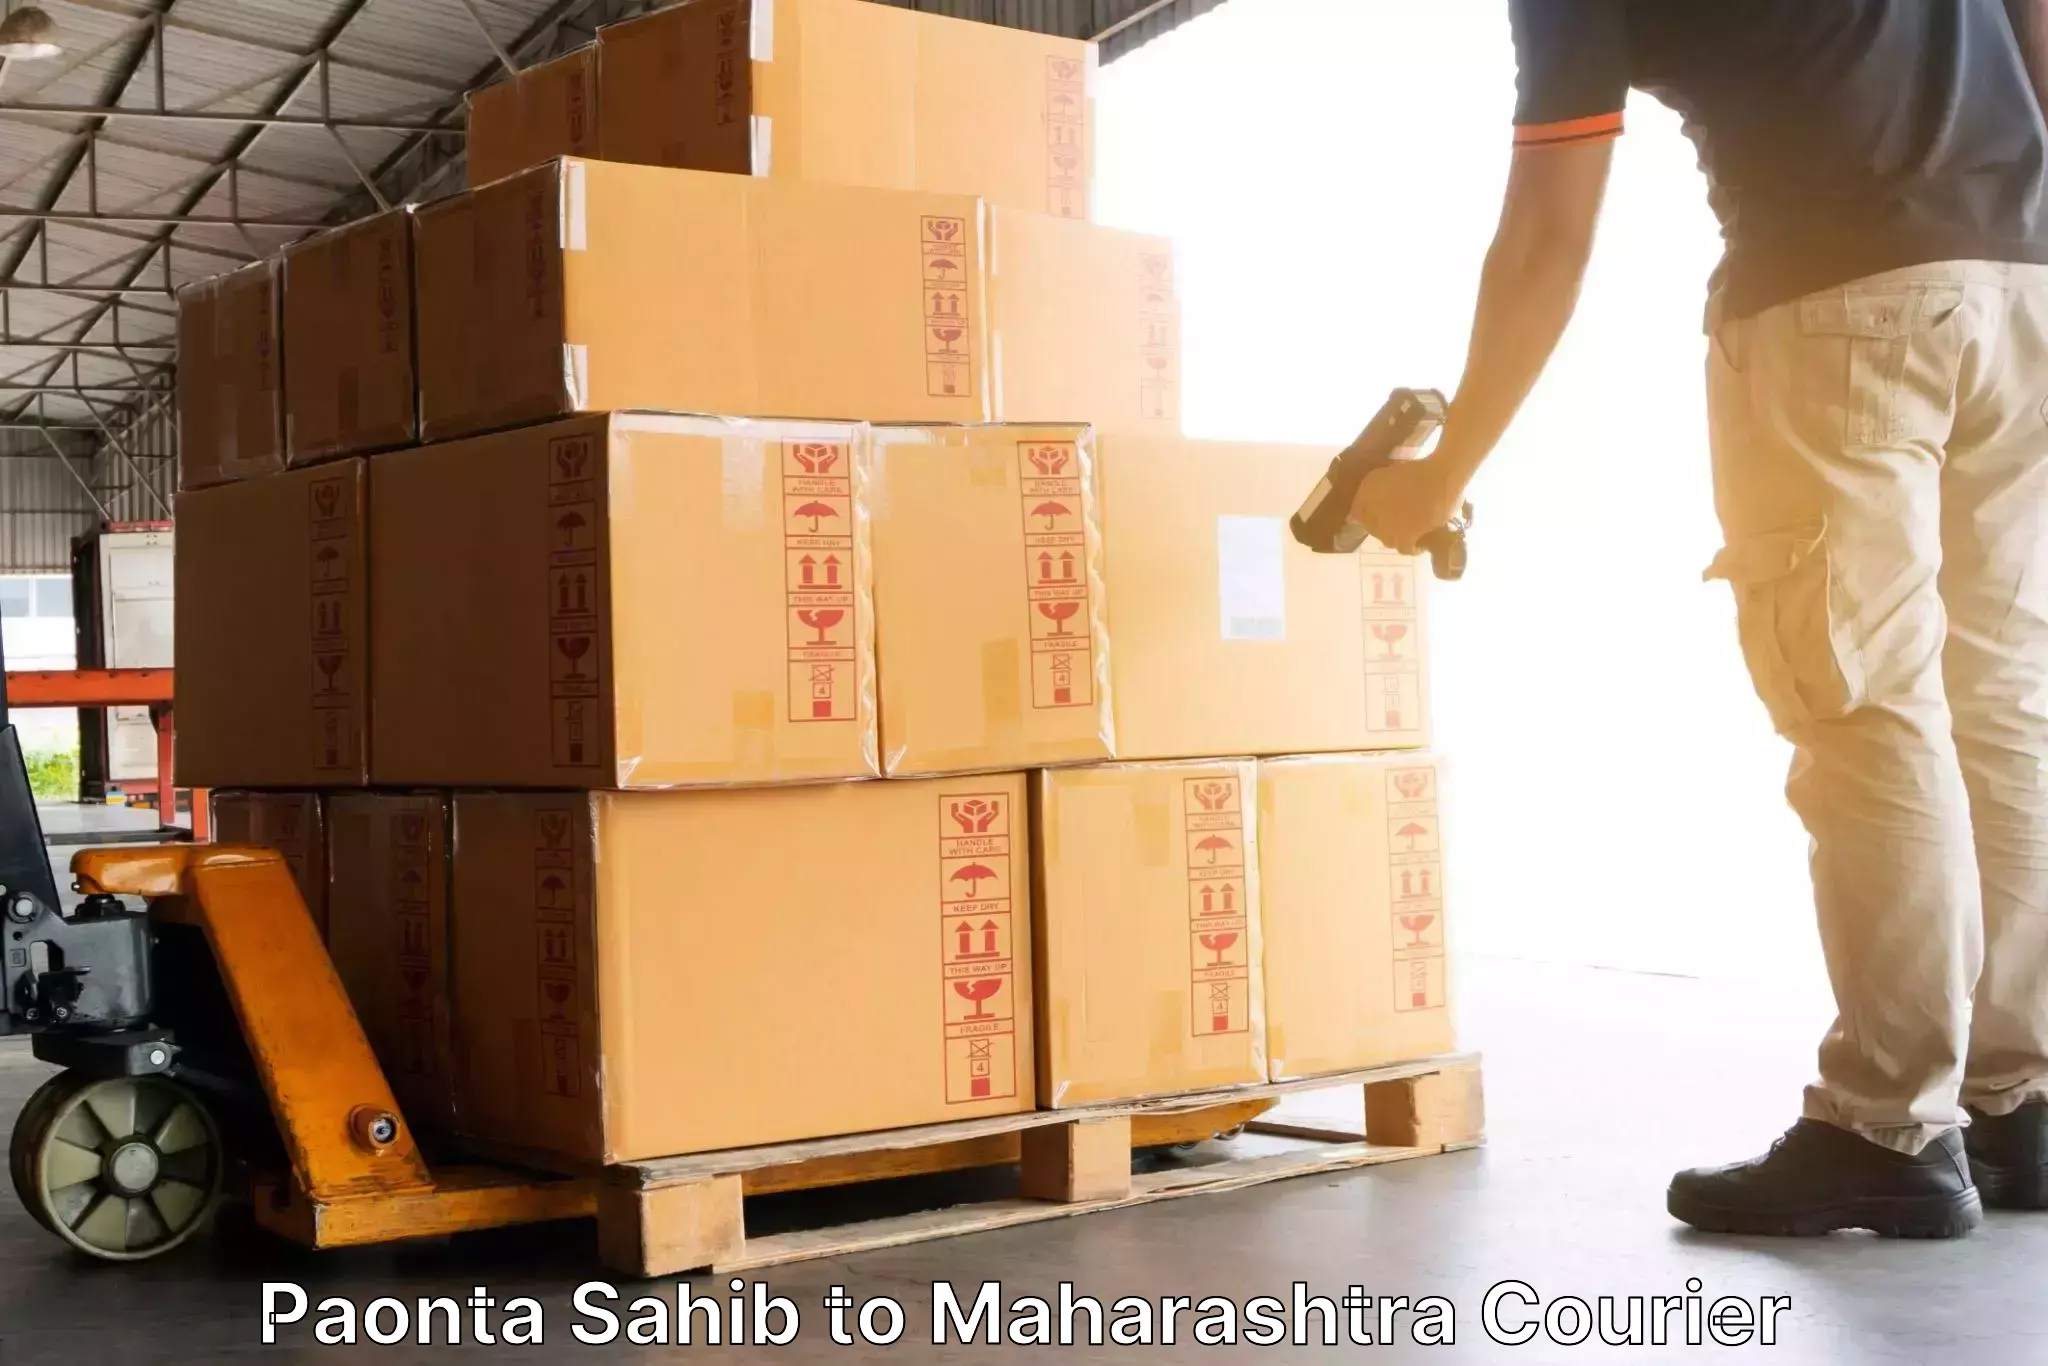 24-hour courier service Paonta Sahib to Khopoli